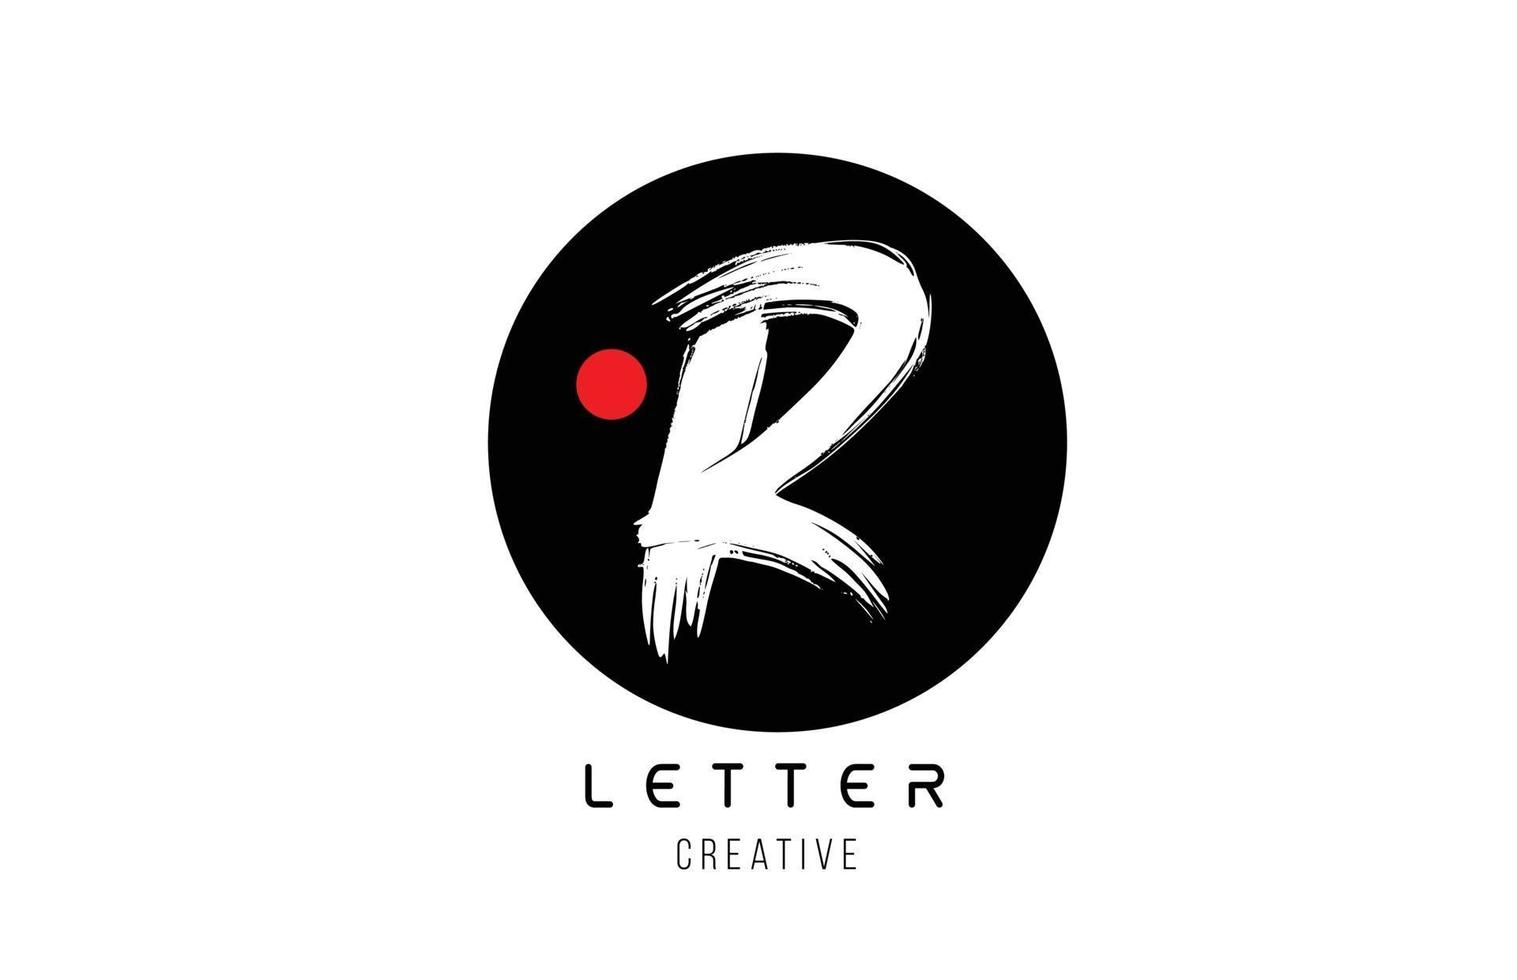 letra do alfabeto r grunge design de escova suja para o ícone da empresa de logotipo vetor